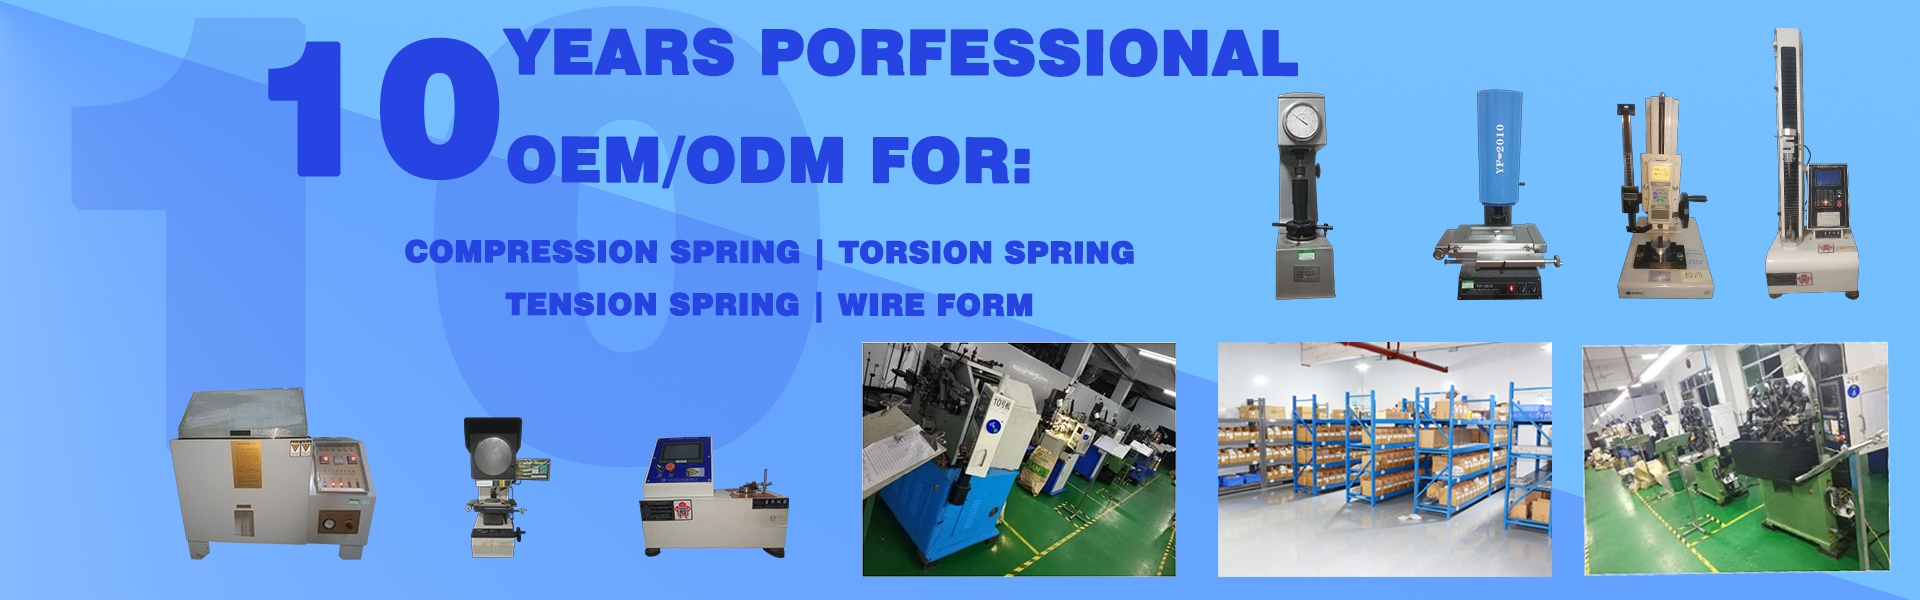 primavera, primavera de presión, primavera de torsión,Dongguan Xinbo Hardware Products Co. LTD